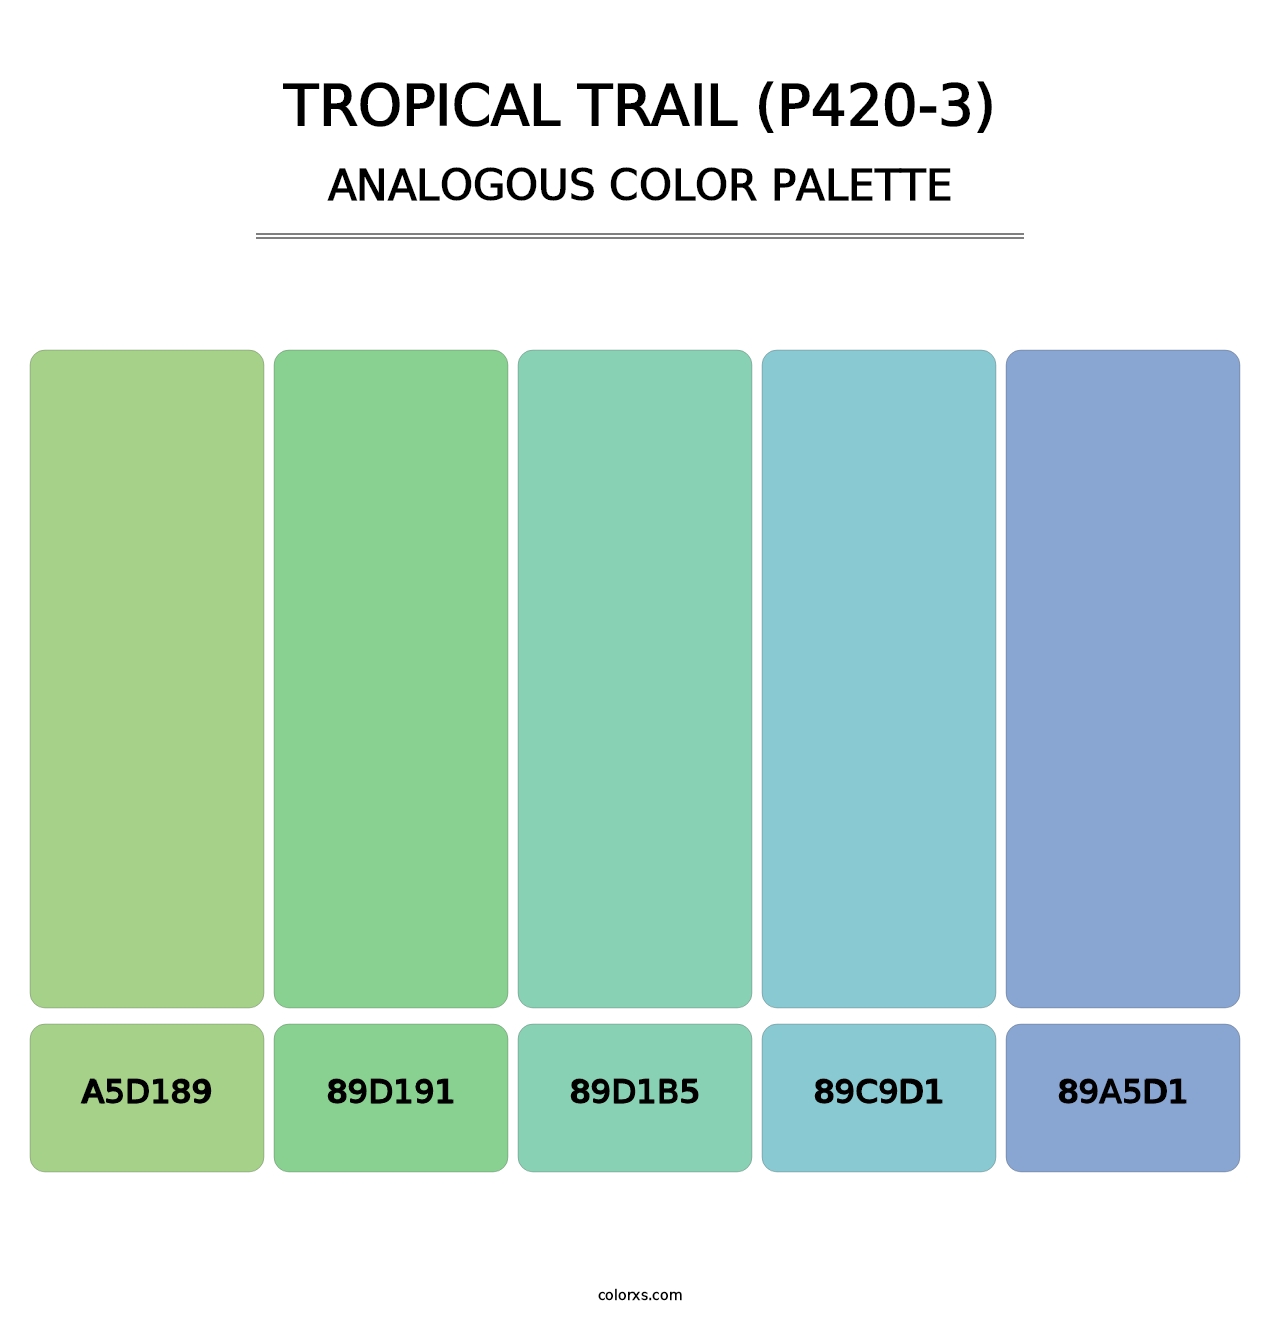 Tropical Trail (P420-3) - Analogous Color Palette